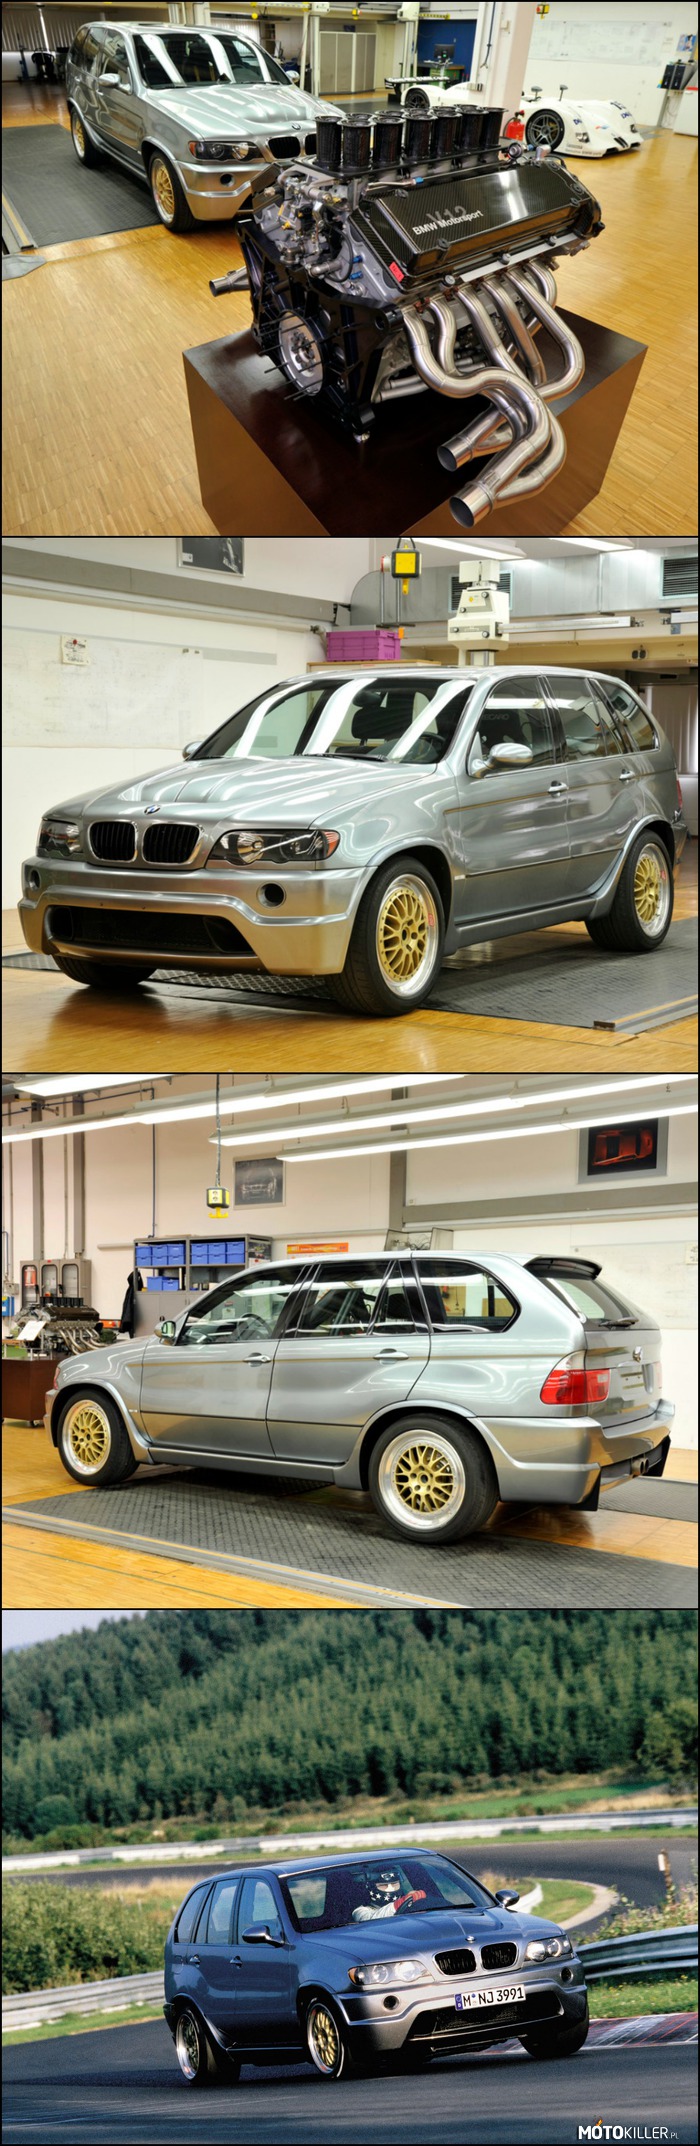 X5 Le Mans Prototyp – Oto efekt wbudowania silnika V12 z BMW V12 LMR do BMW X5, wersja 5-drzwiowa typu SUV. Silnik benzynowy o pojemności 5990 cm³ z mocą 515 kW (700 KM). Manualna 6-biegowa skrzynia biegów i napęd 4x4. Przyspiesza od 0 do 100km/h w 4,7 sekund a prędkość maksymalna to ponad 300km/h. Link do krótkiego filmiku: https://www.youtube.com/watch?v=enG-XzZrg68 